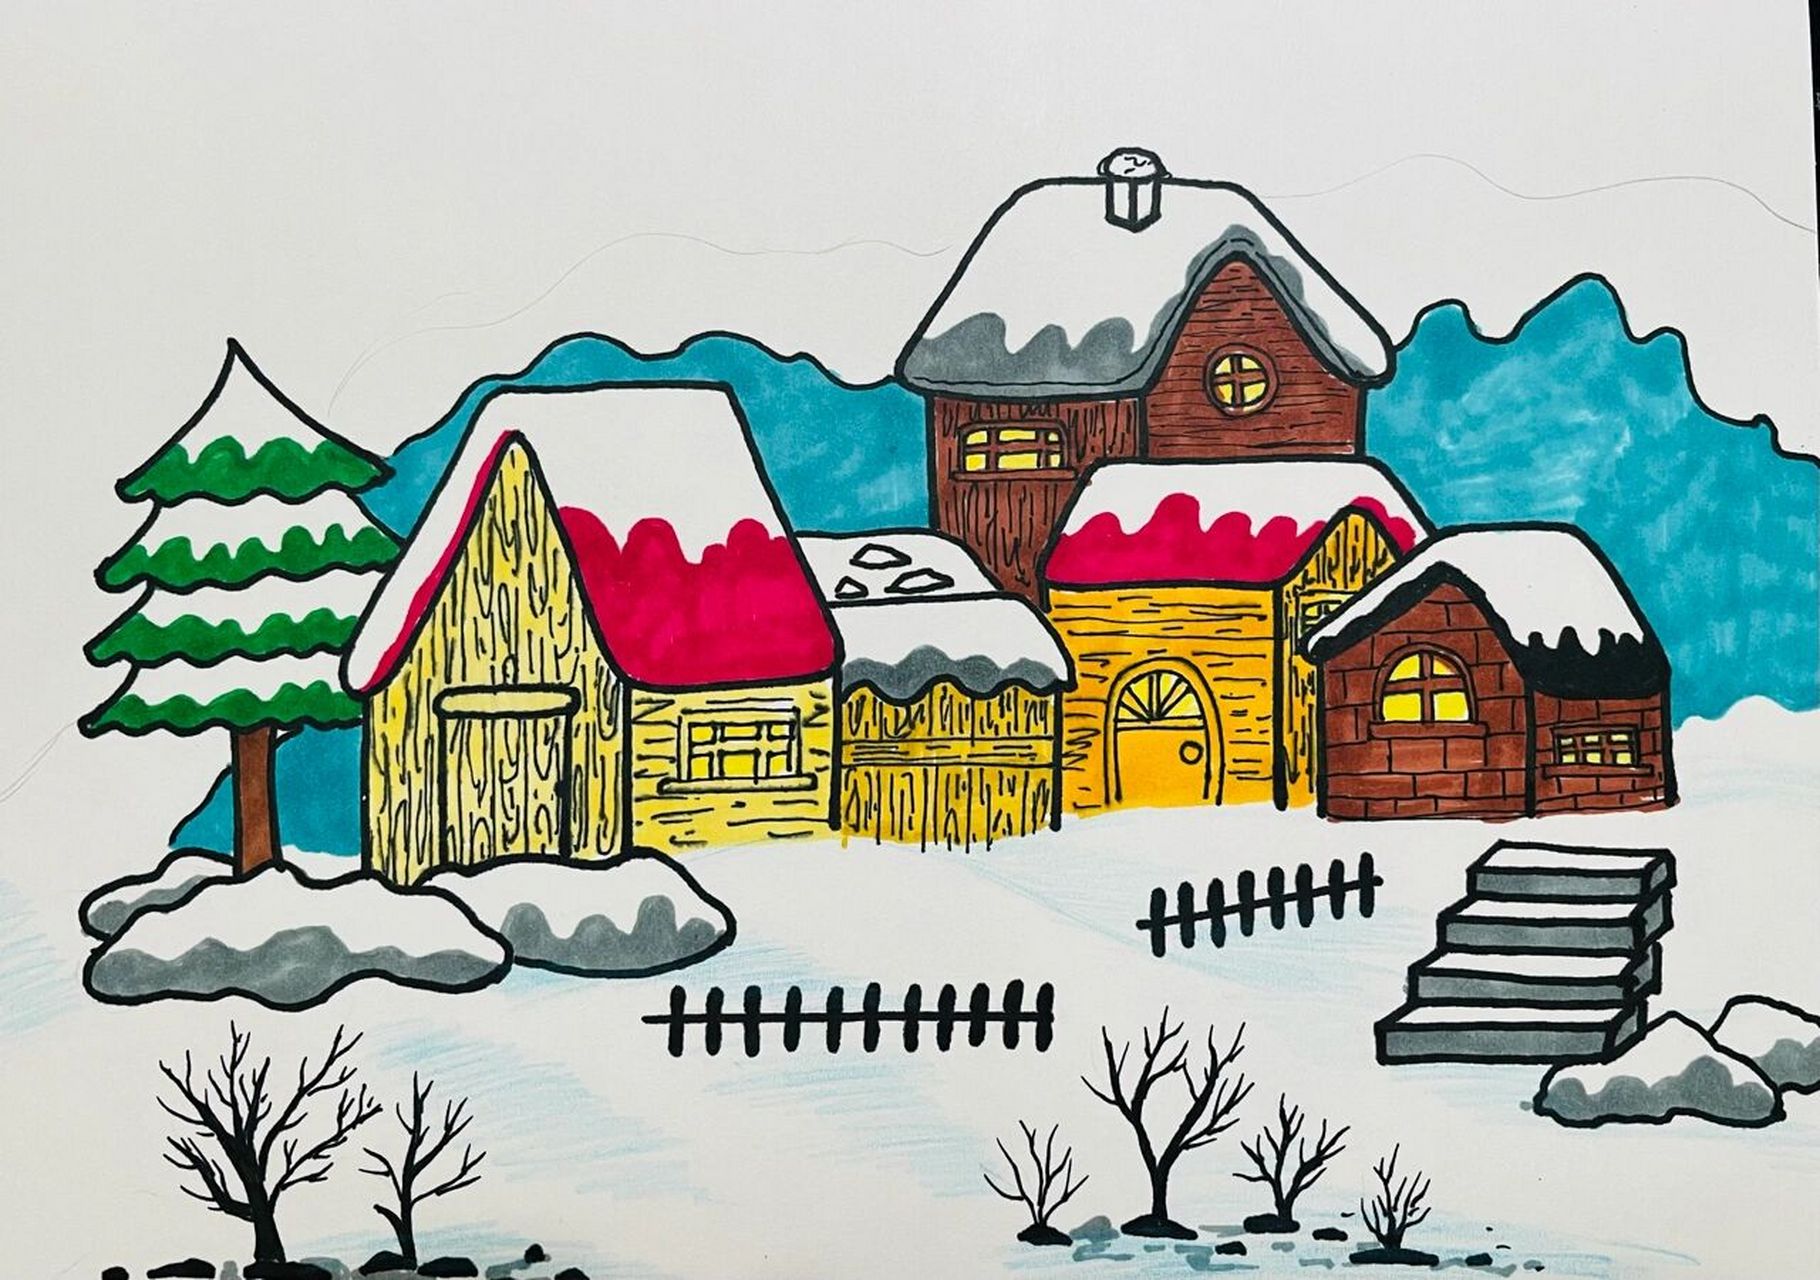 下雪了幼儿绘画作品图片